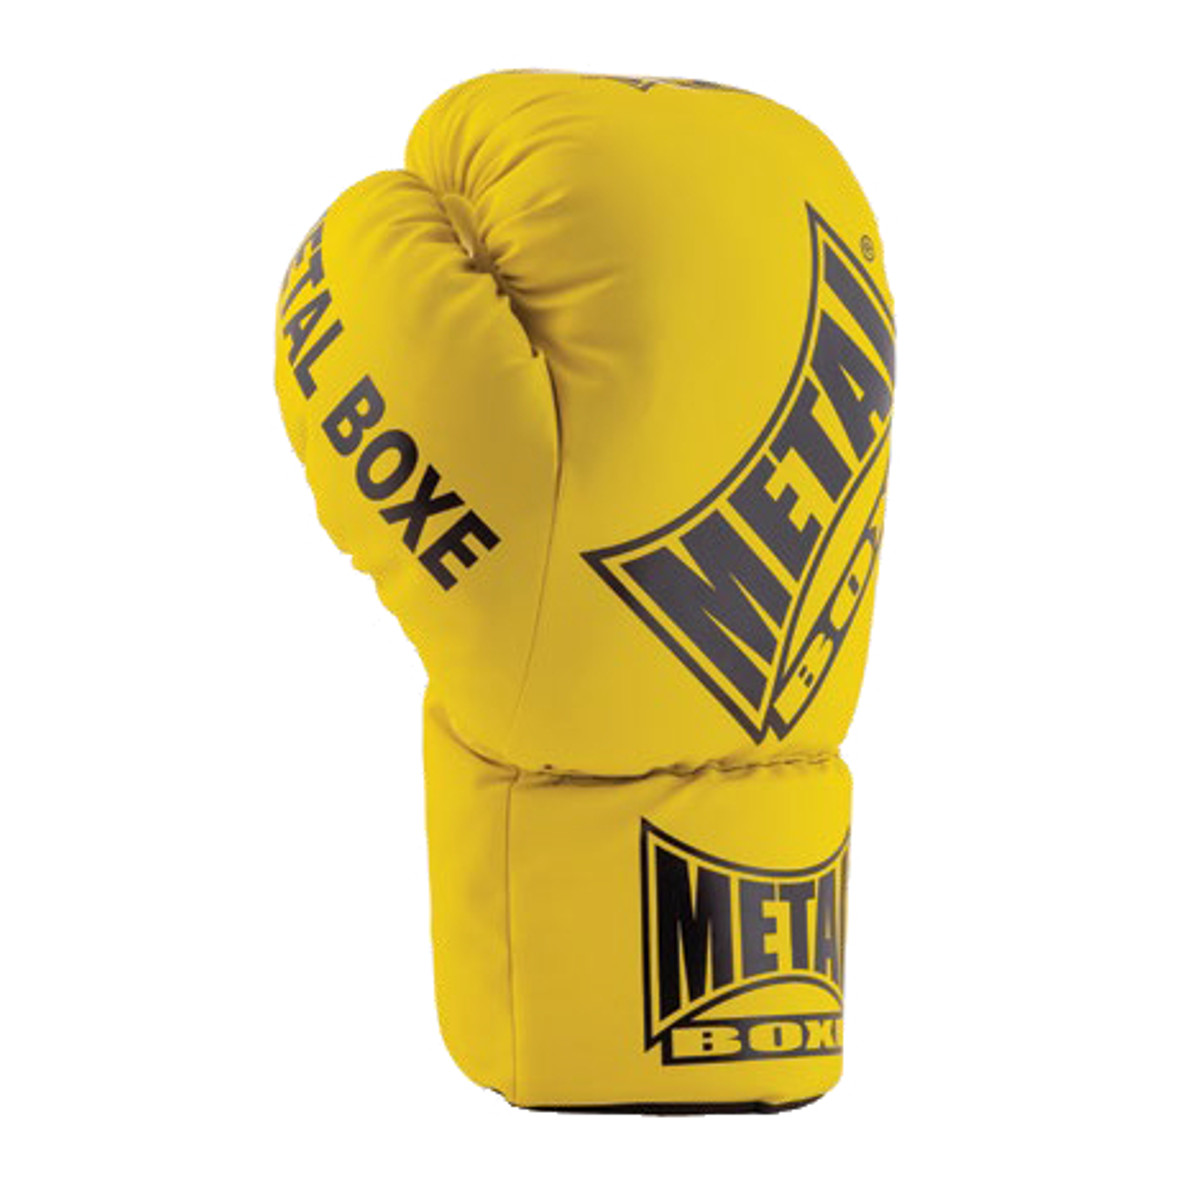 Maxi gant de boxe Métal boxe